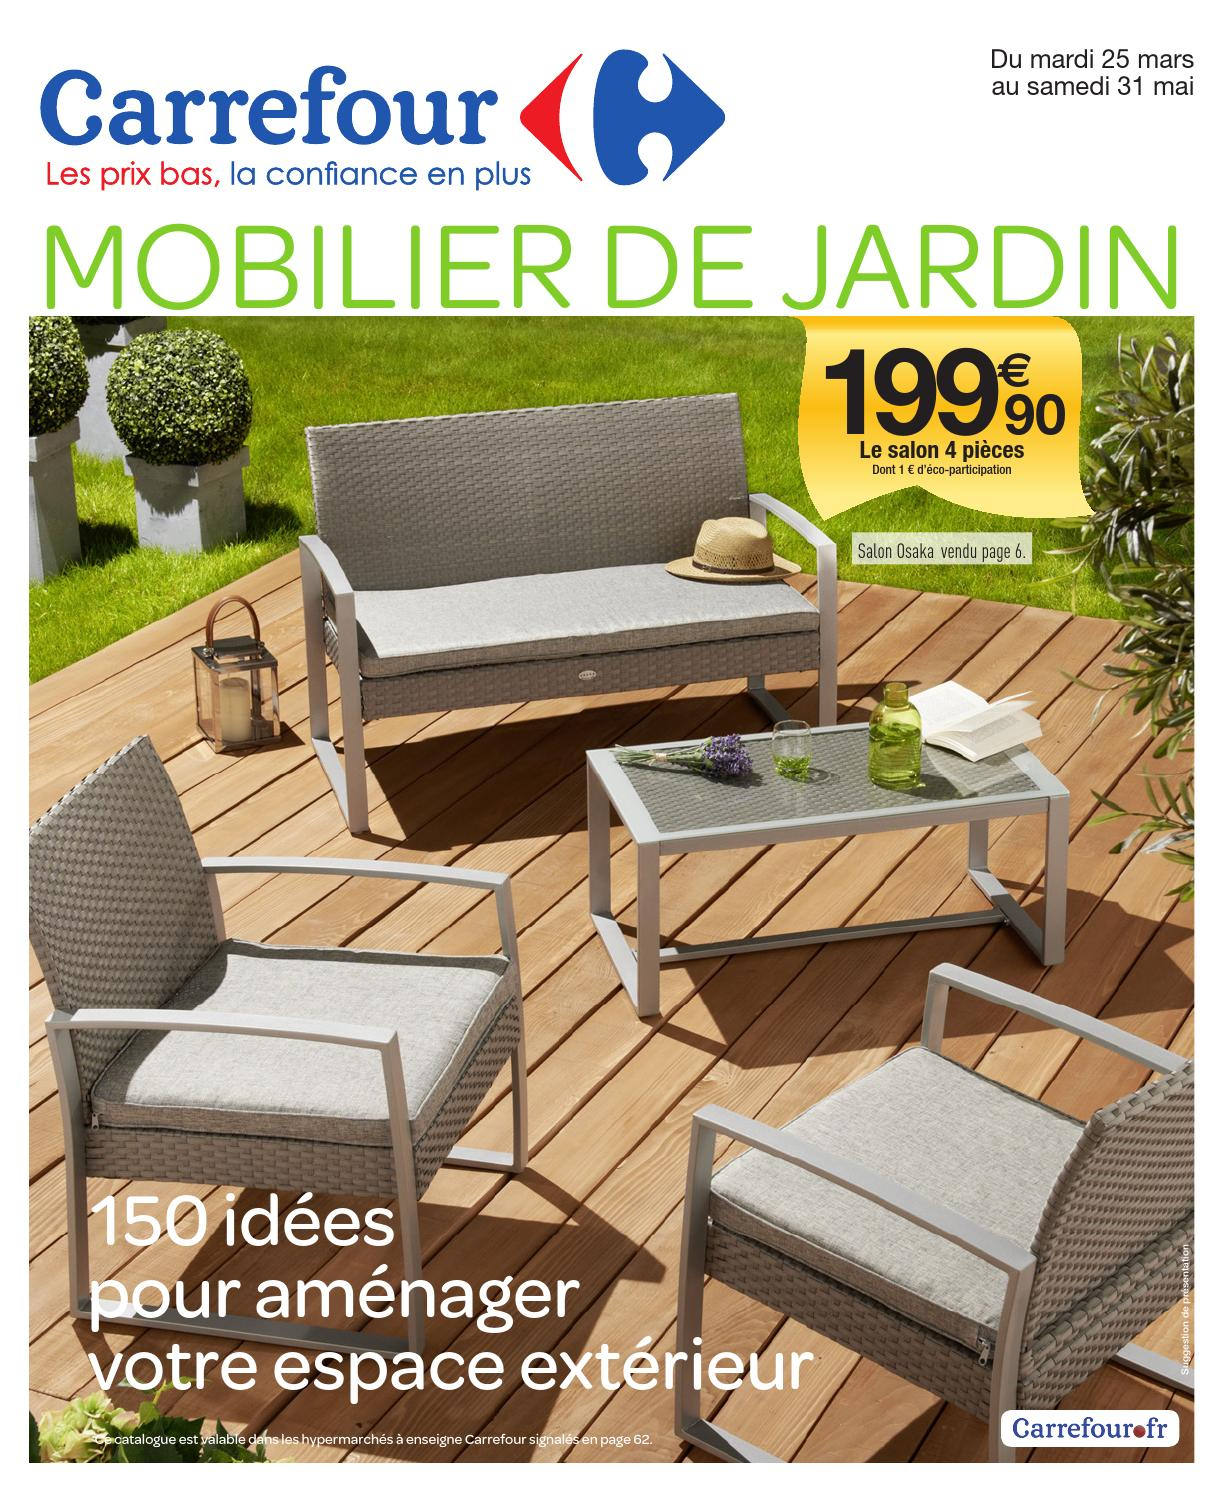 Catalogue Carrefour - 25.03-31.05.2014 By Joe Monroe - Issuu dedans Chaise Longue De Jardin Carrefour